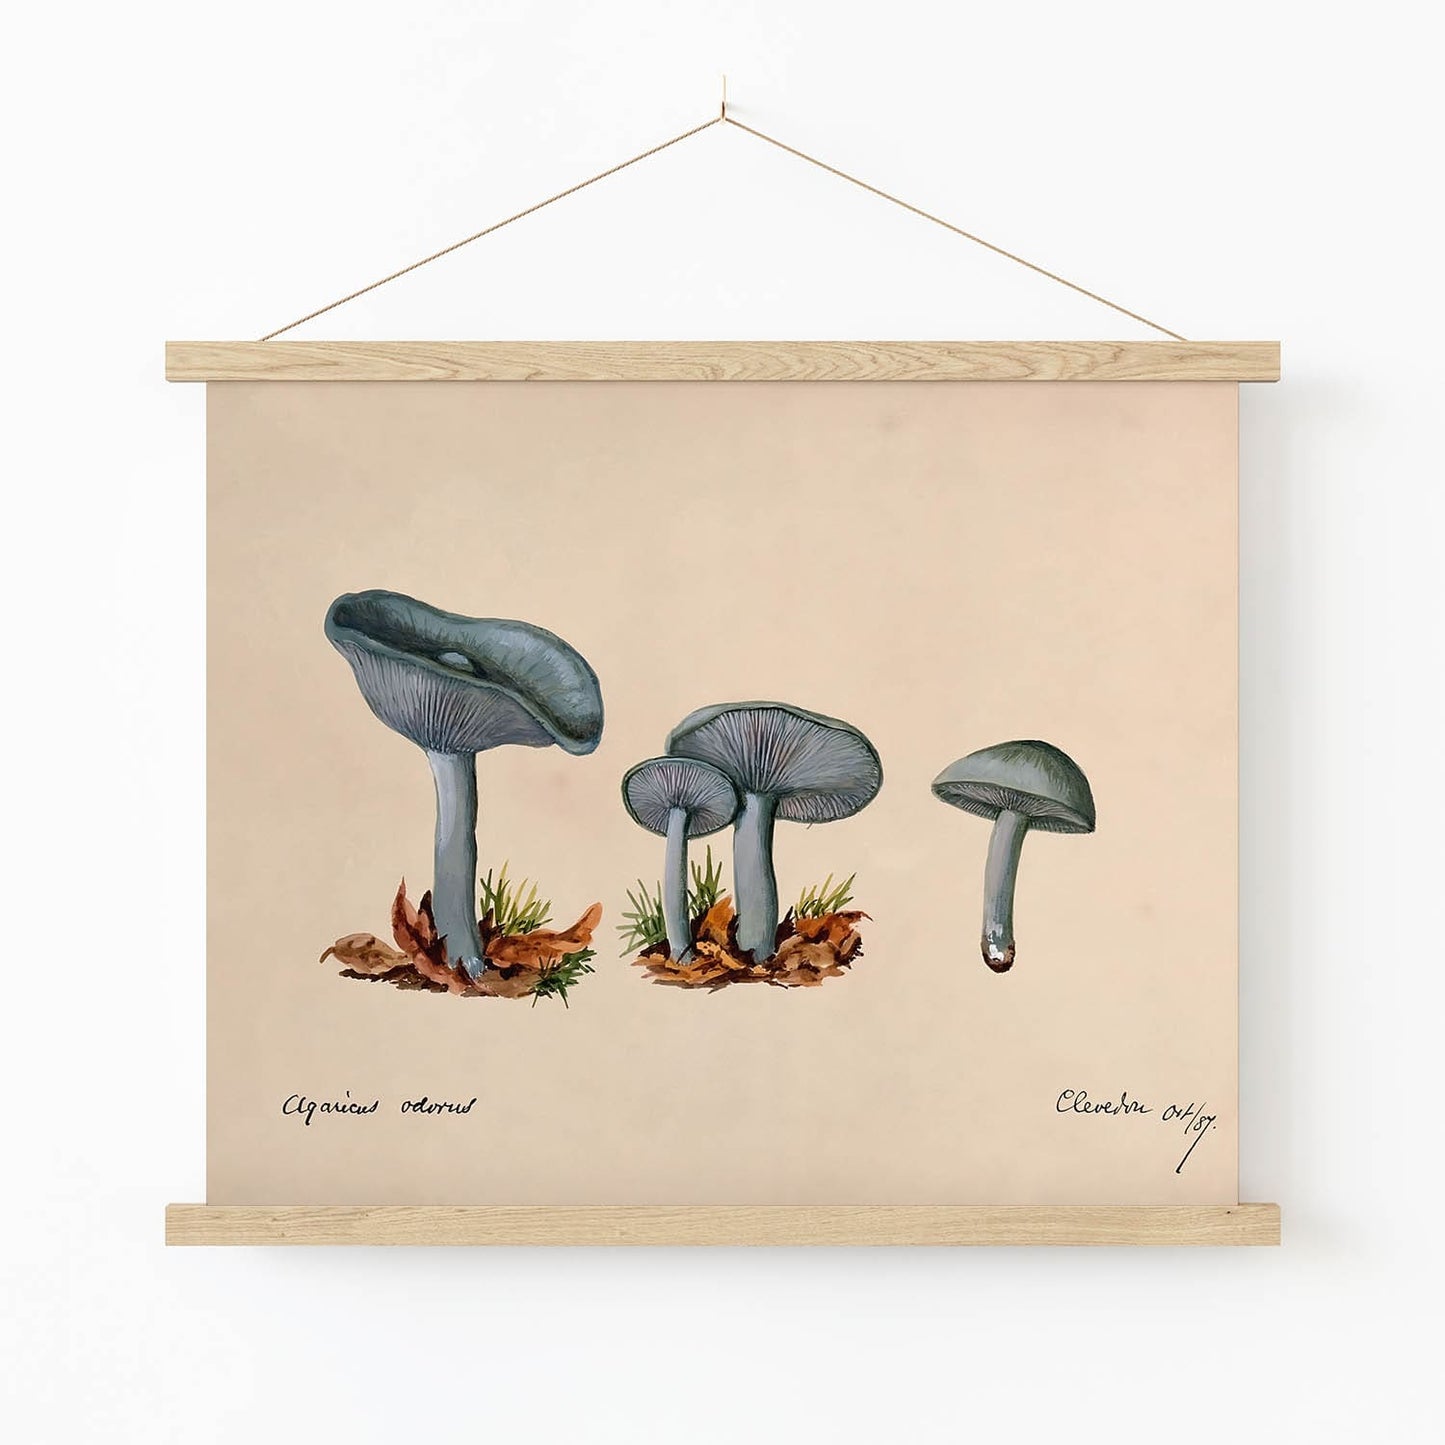 Little Blue Mushrooms Art Print in Wood Hanger Frame on Wall